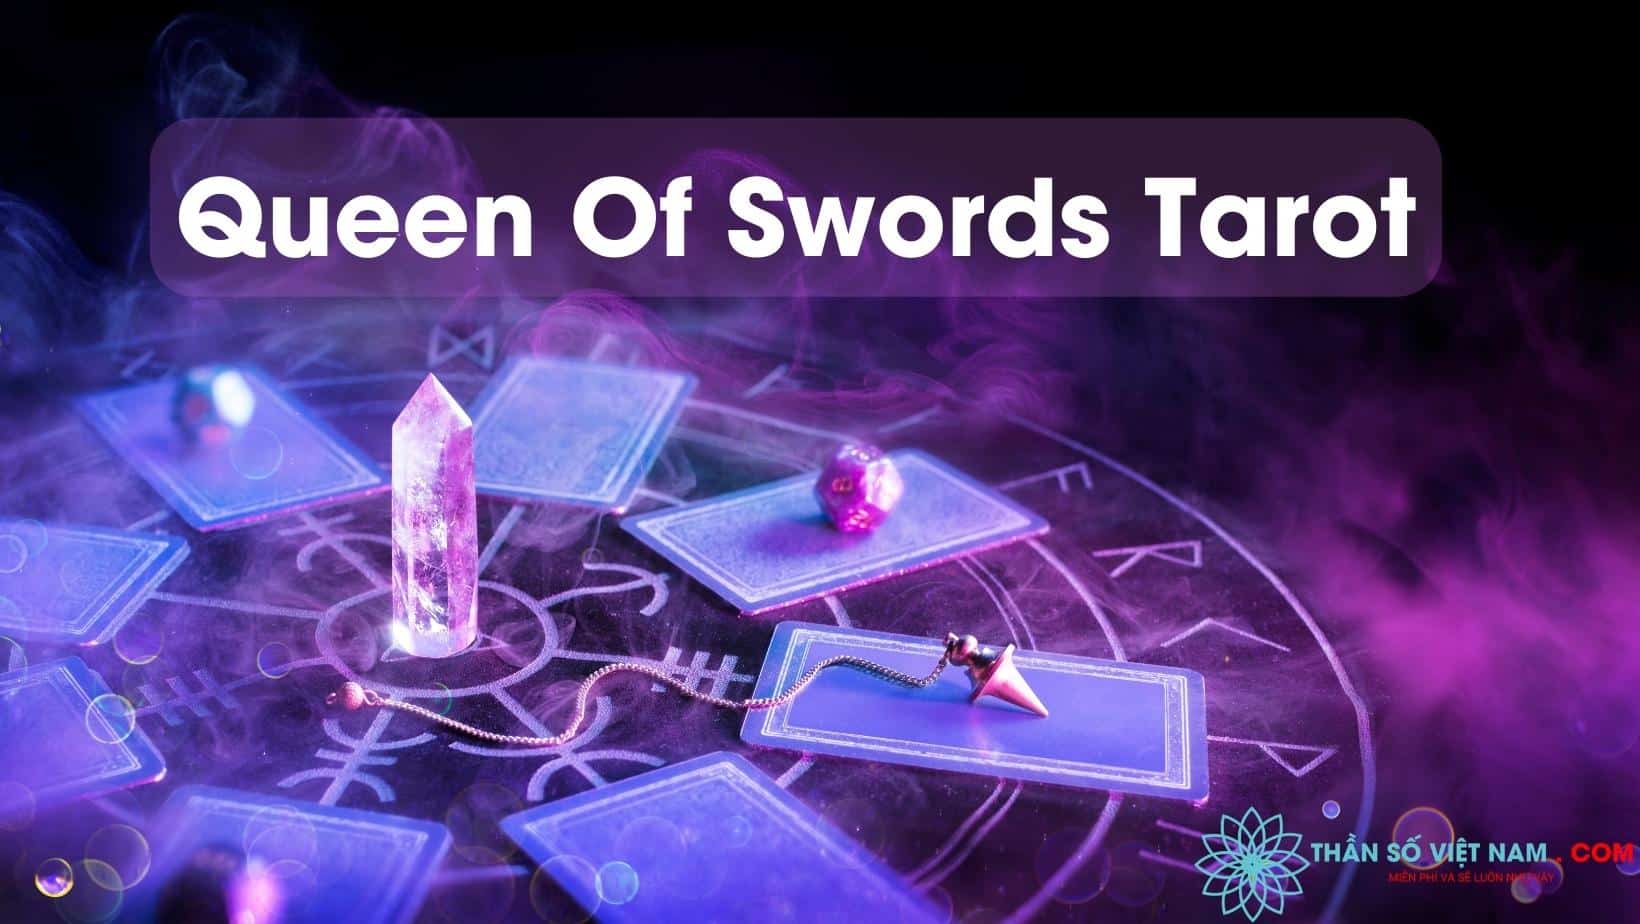 Ý nghĩa Queen Of Swords Tarot - Queen Of Swords Tarot ý nghĩa: Bộ bài Queen of Swords Tarot đã được thiết kế để giúp bạn khám phá những ý nghĩa sâu sắc về sự can đảm, sự thông minh và khả năng kiểm soát cảm xúc. Hãy tìm hiểu thêm về bài Tarot này và nhận được truyền cảm hứng về sự mạnh mẽ và quyết đoán.